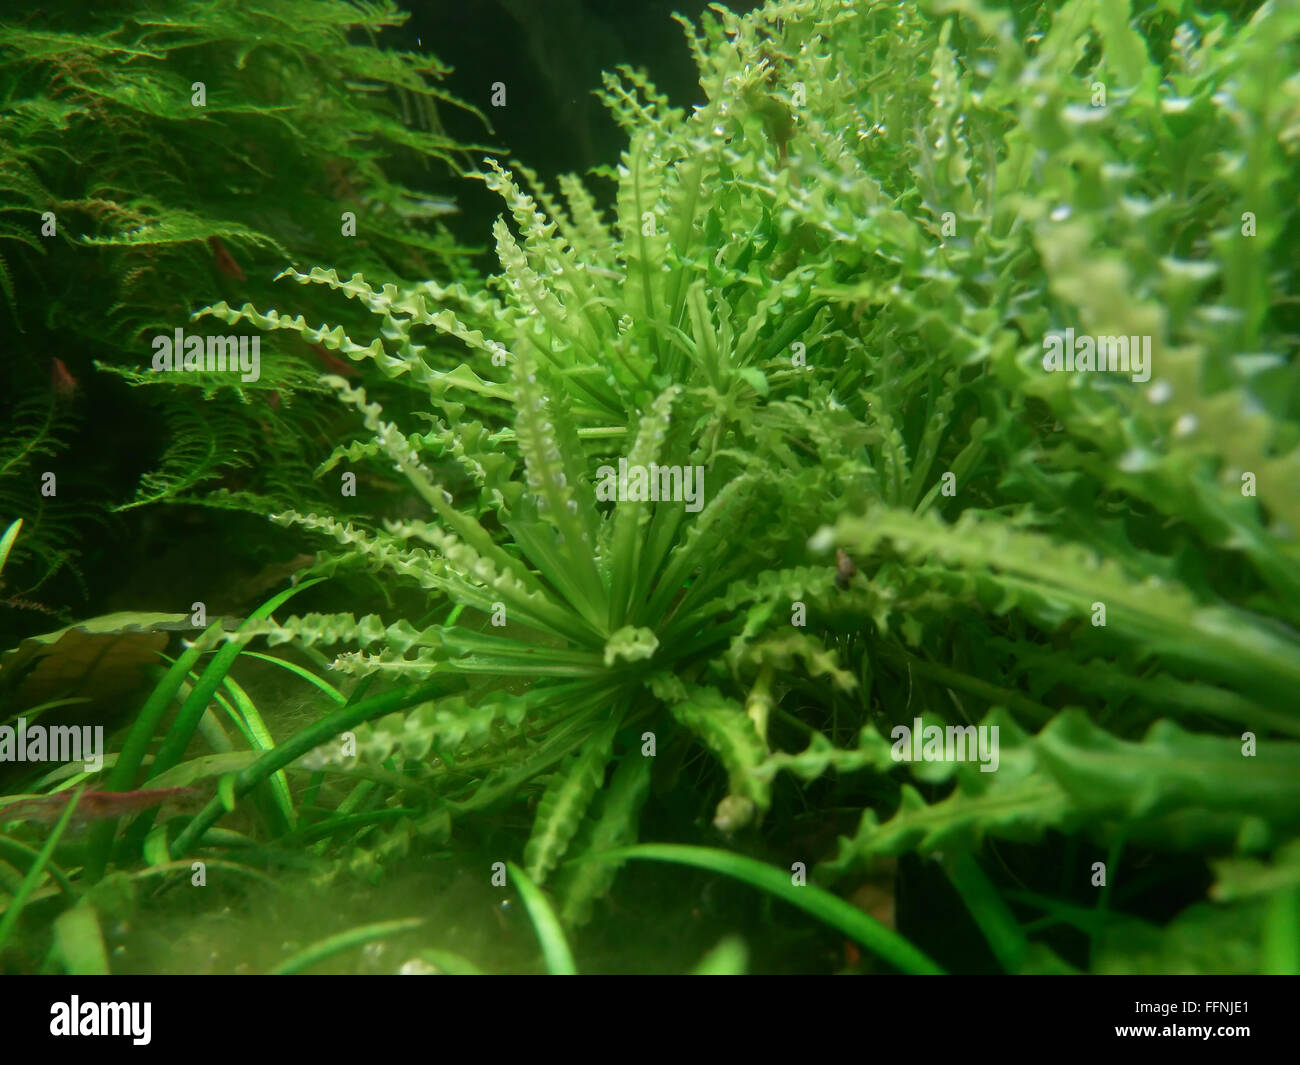 Acquario subacqueo flora dettagli con luce artificiale Foto Stock